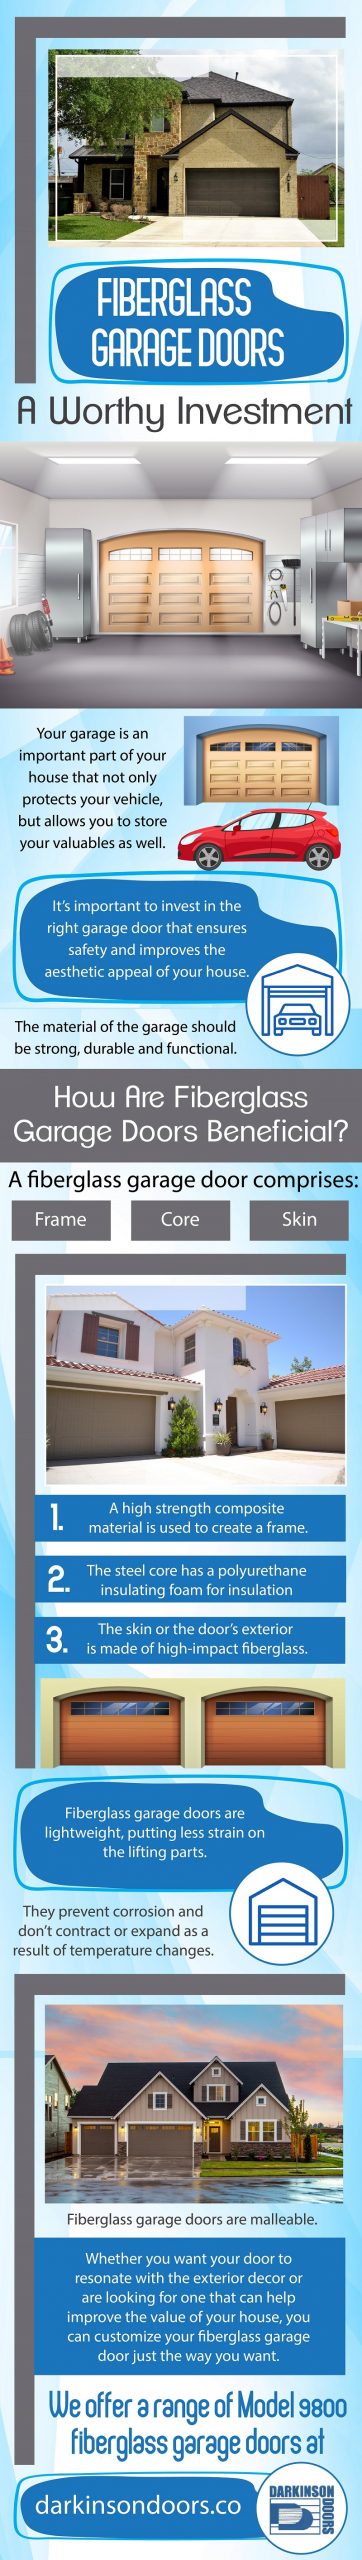 fiberglass garage doors